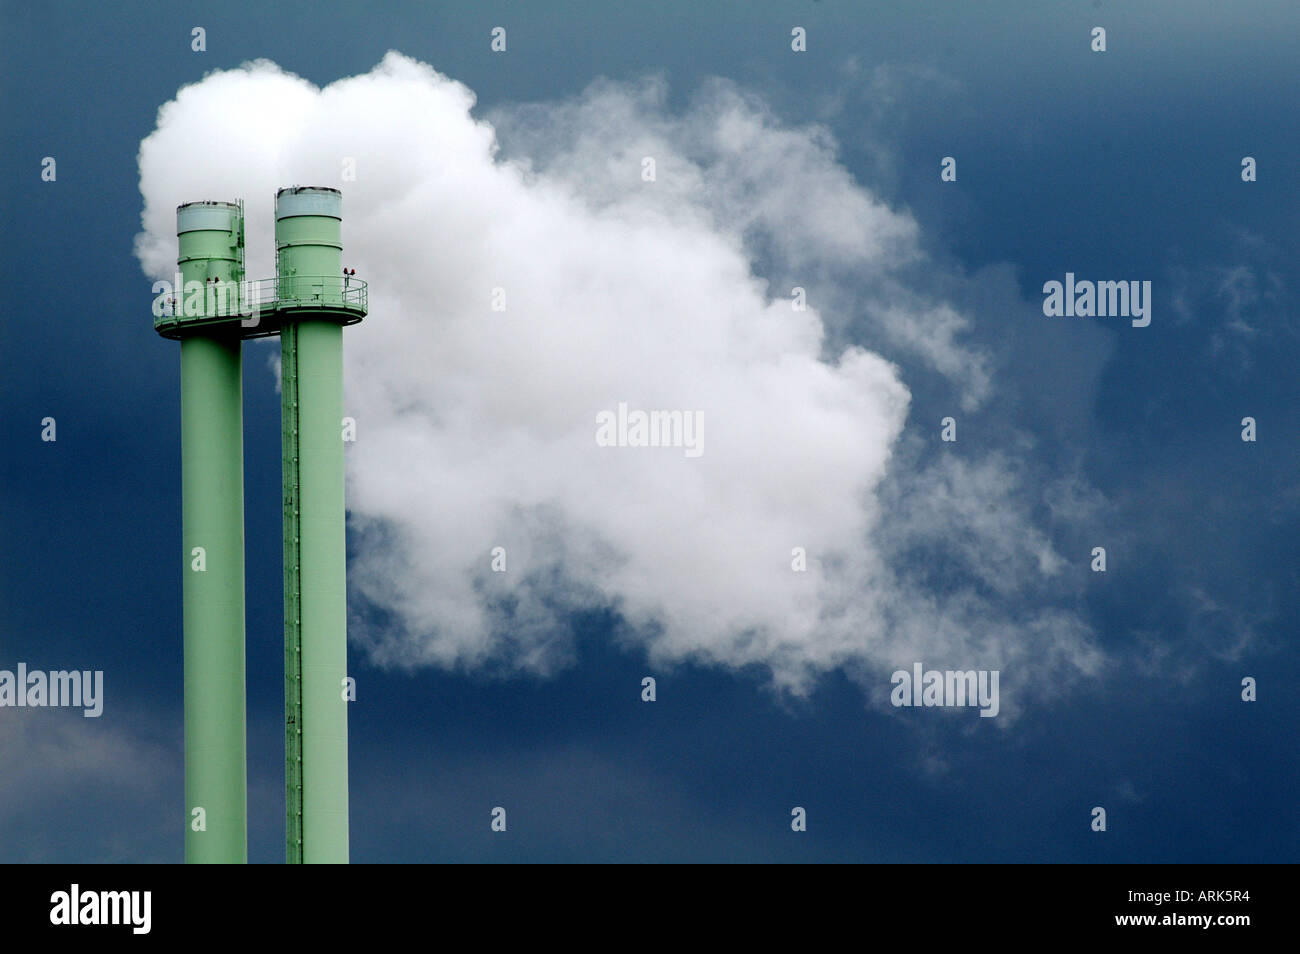 Symbolische Foto: Schornstein und Rauch einer Fabrik. Luftverschmutzung, Umweltverschmutzung. Stockfoto